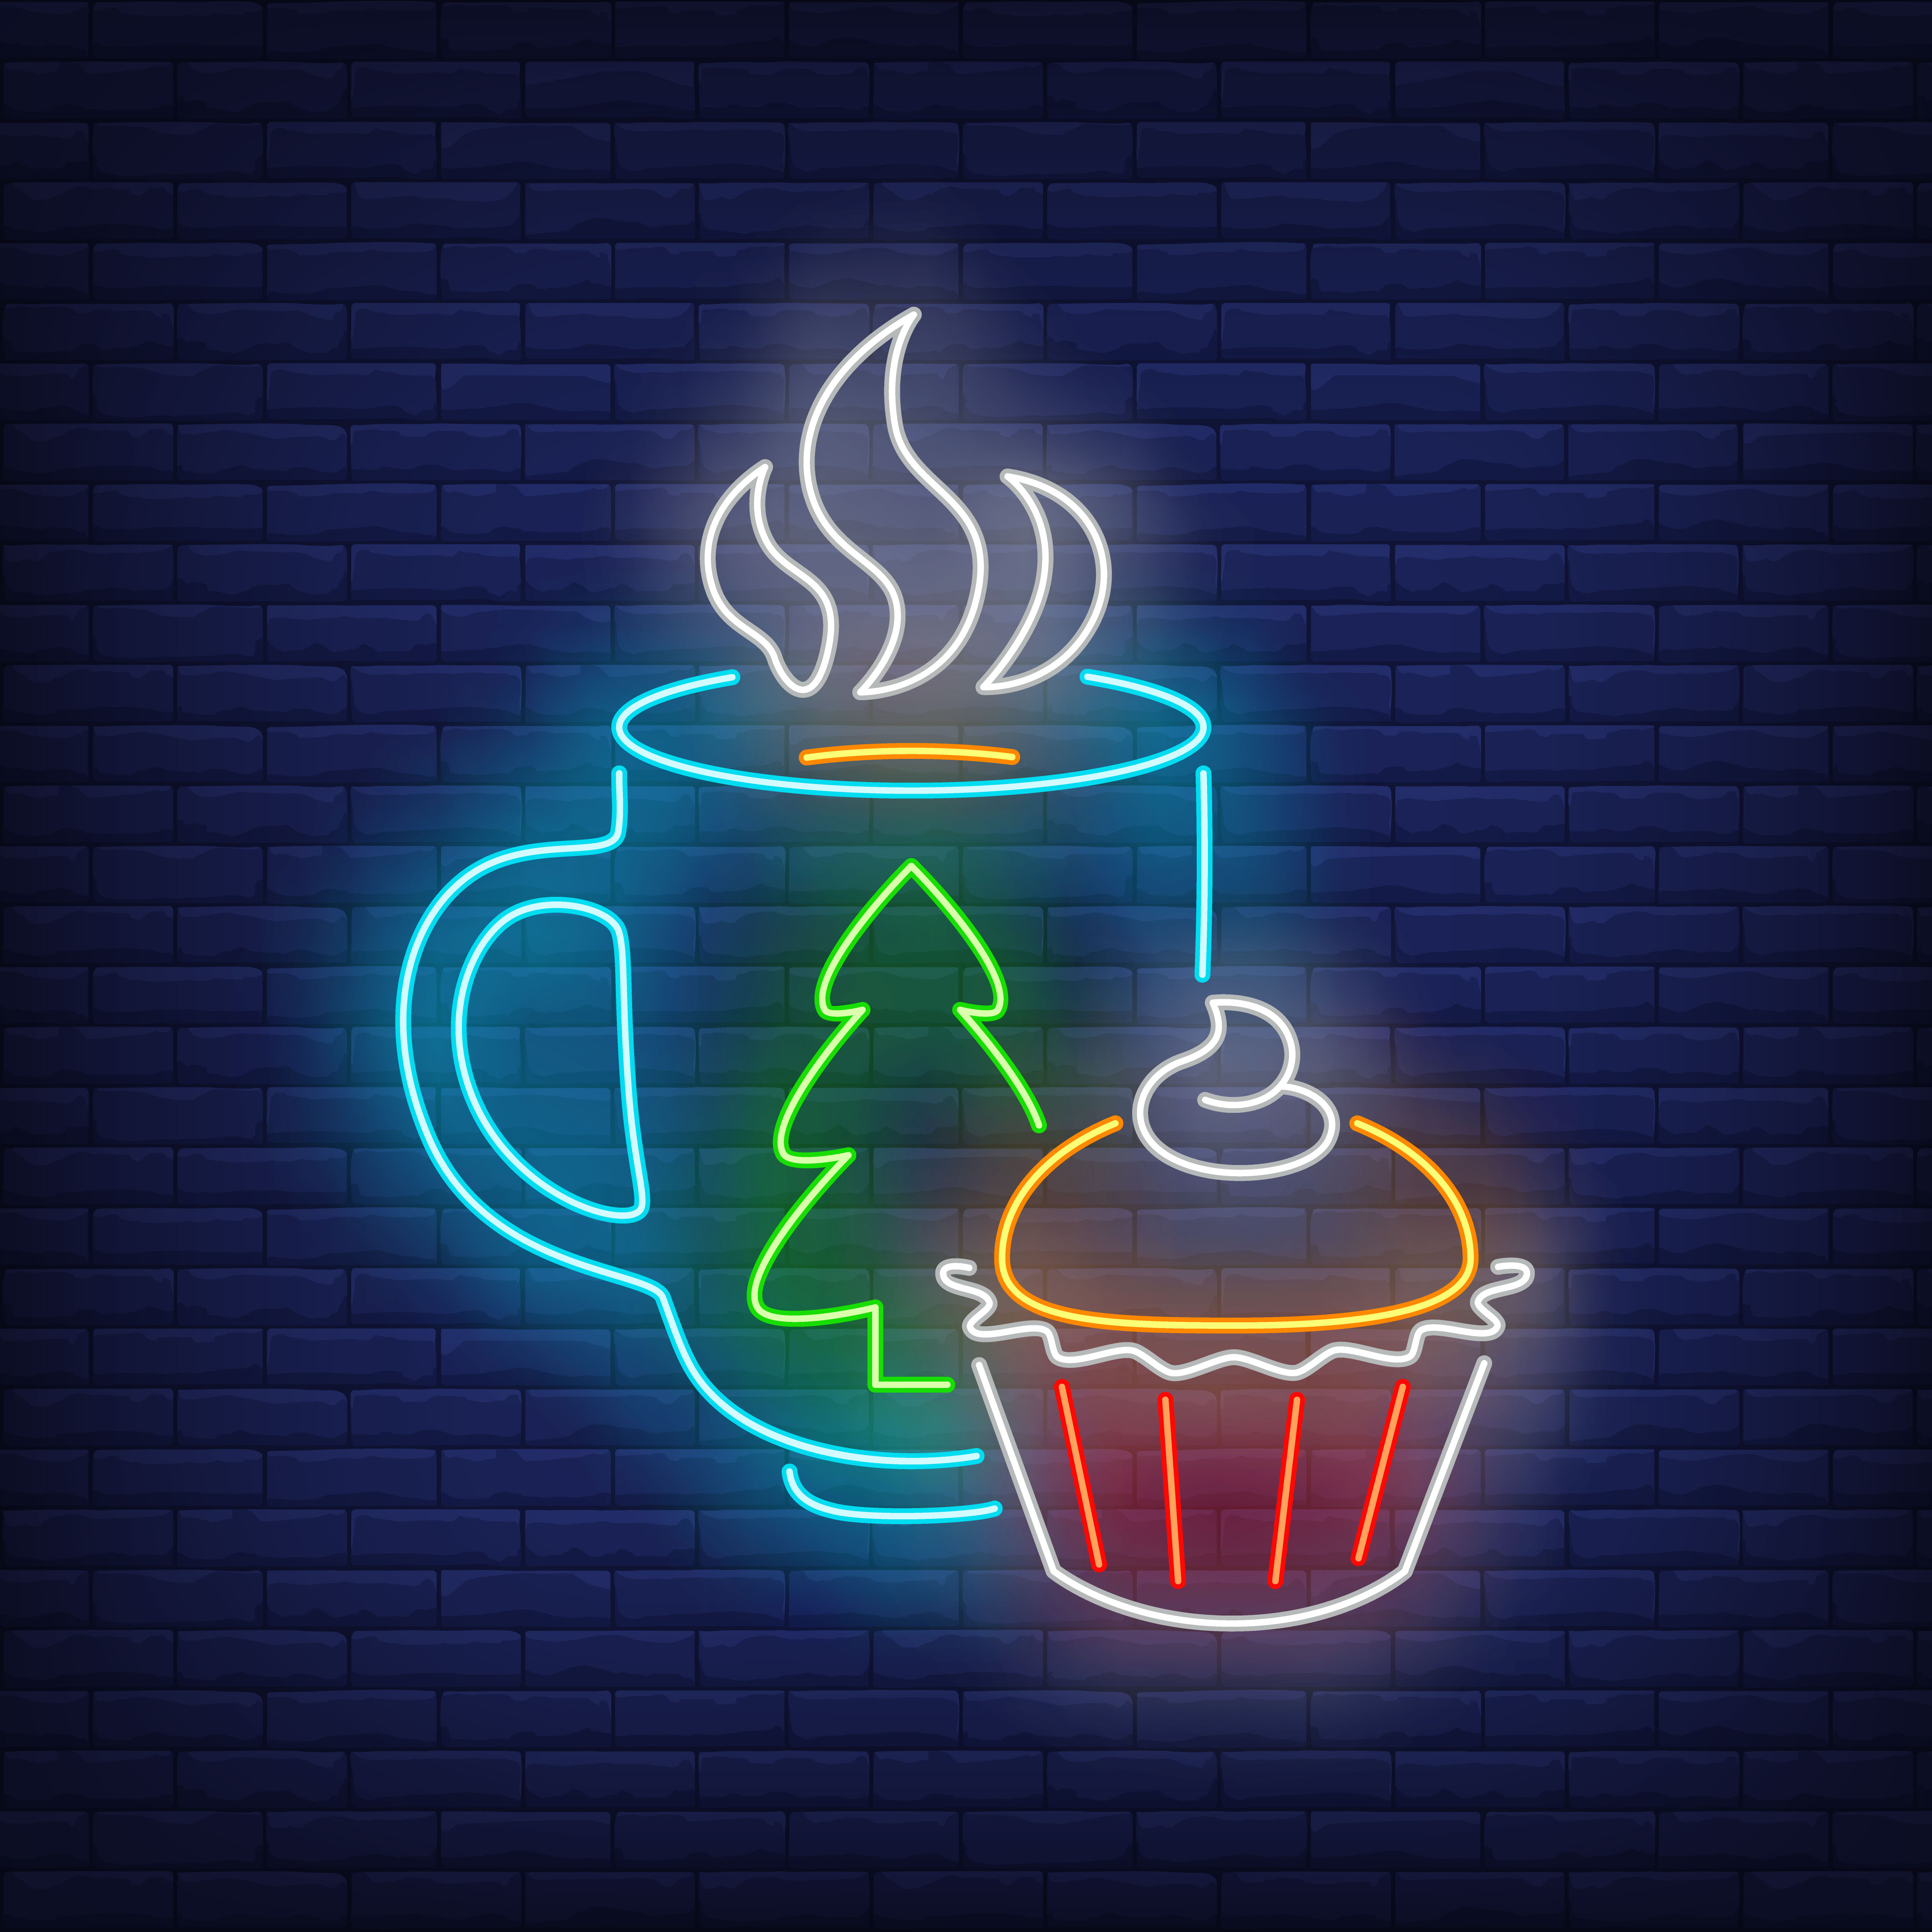 Christmas mug and cupcake in neon style